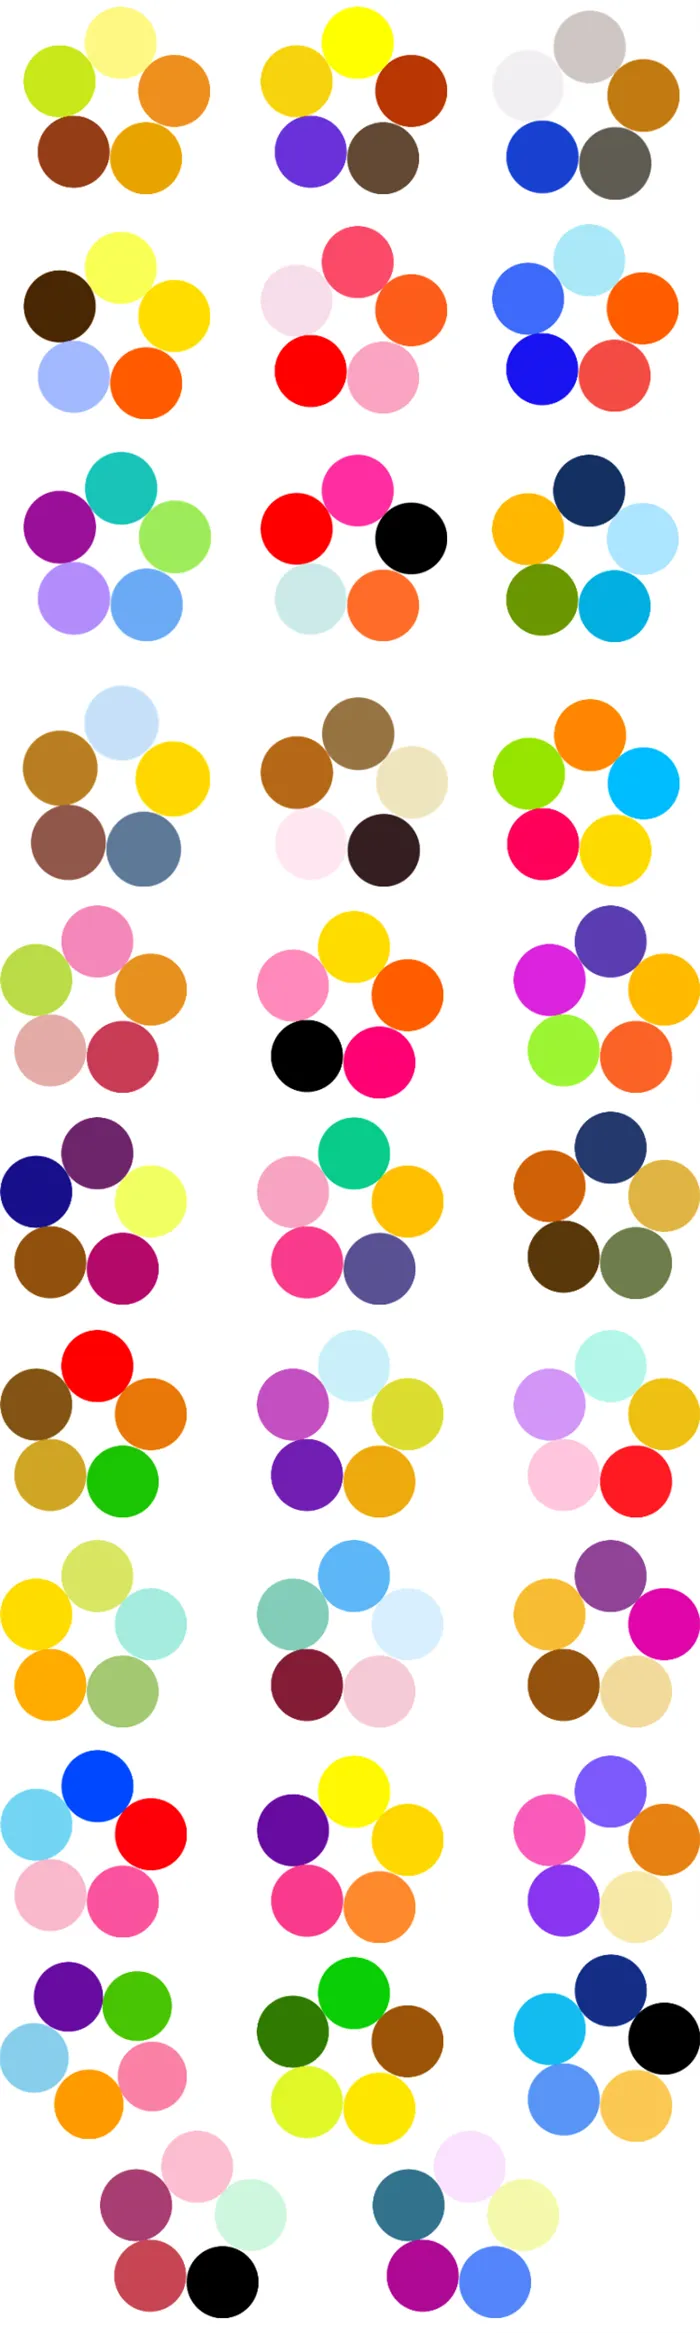 Цветовой цикл Иттена для создания цветовых комбинаций, фото № 10